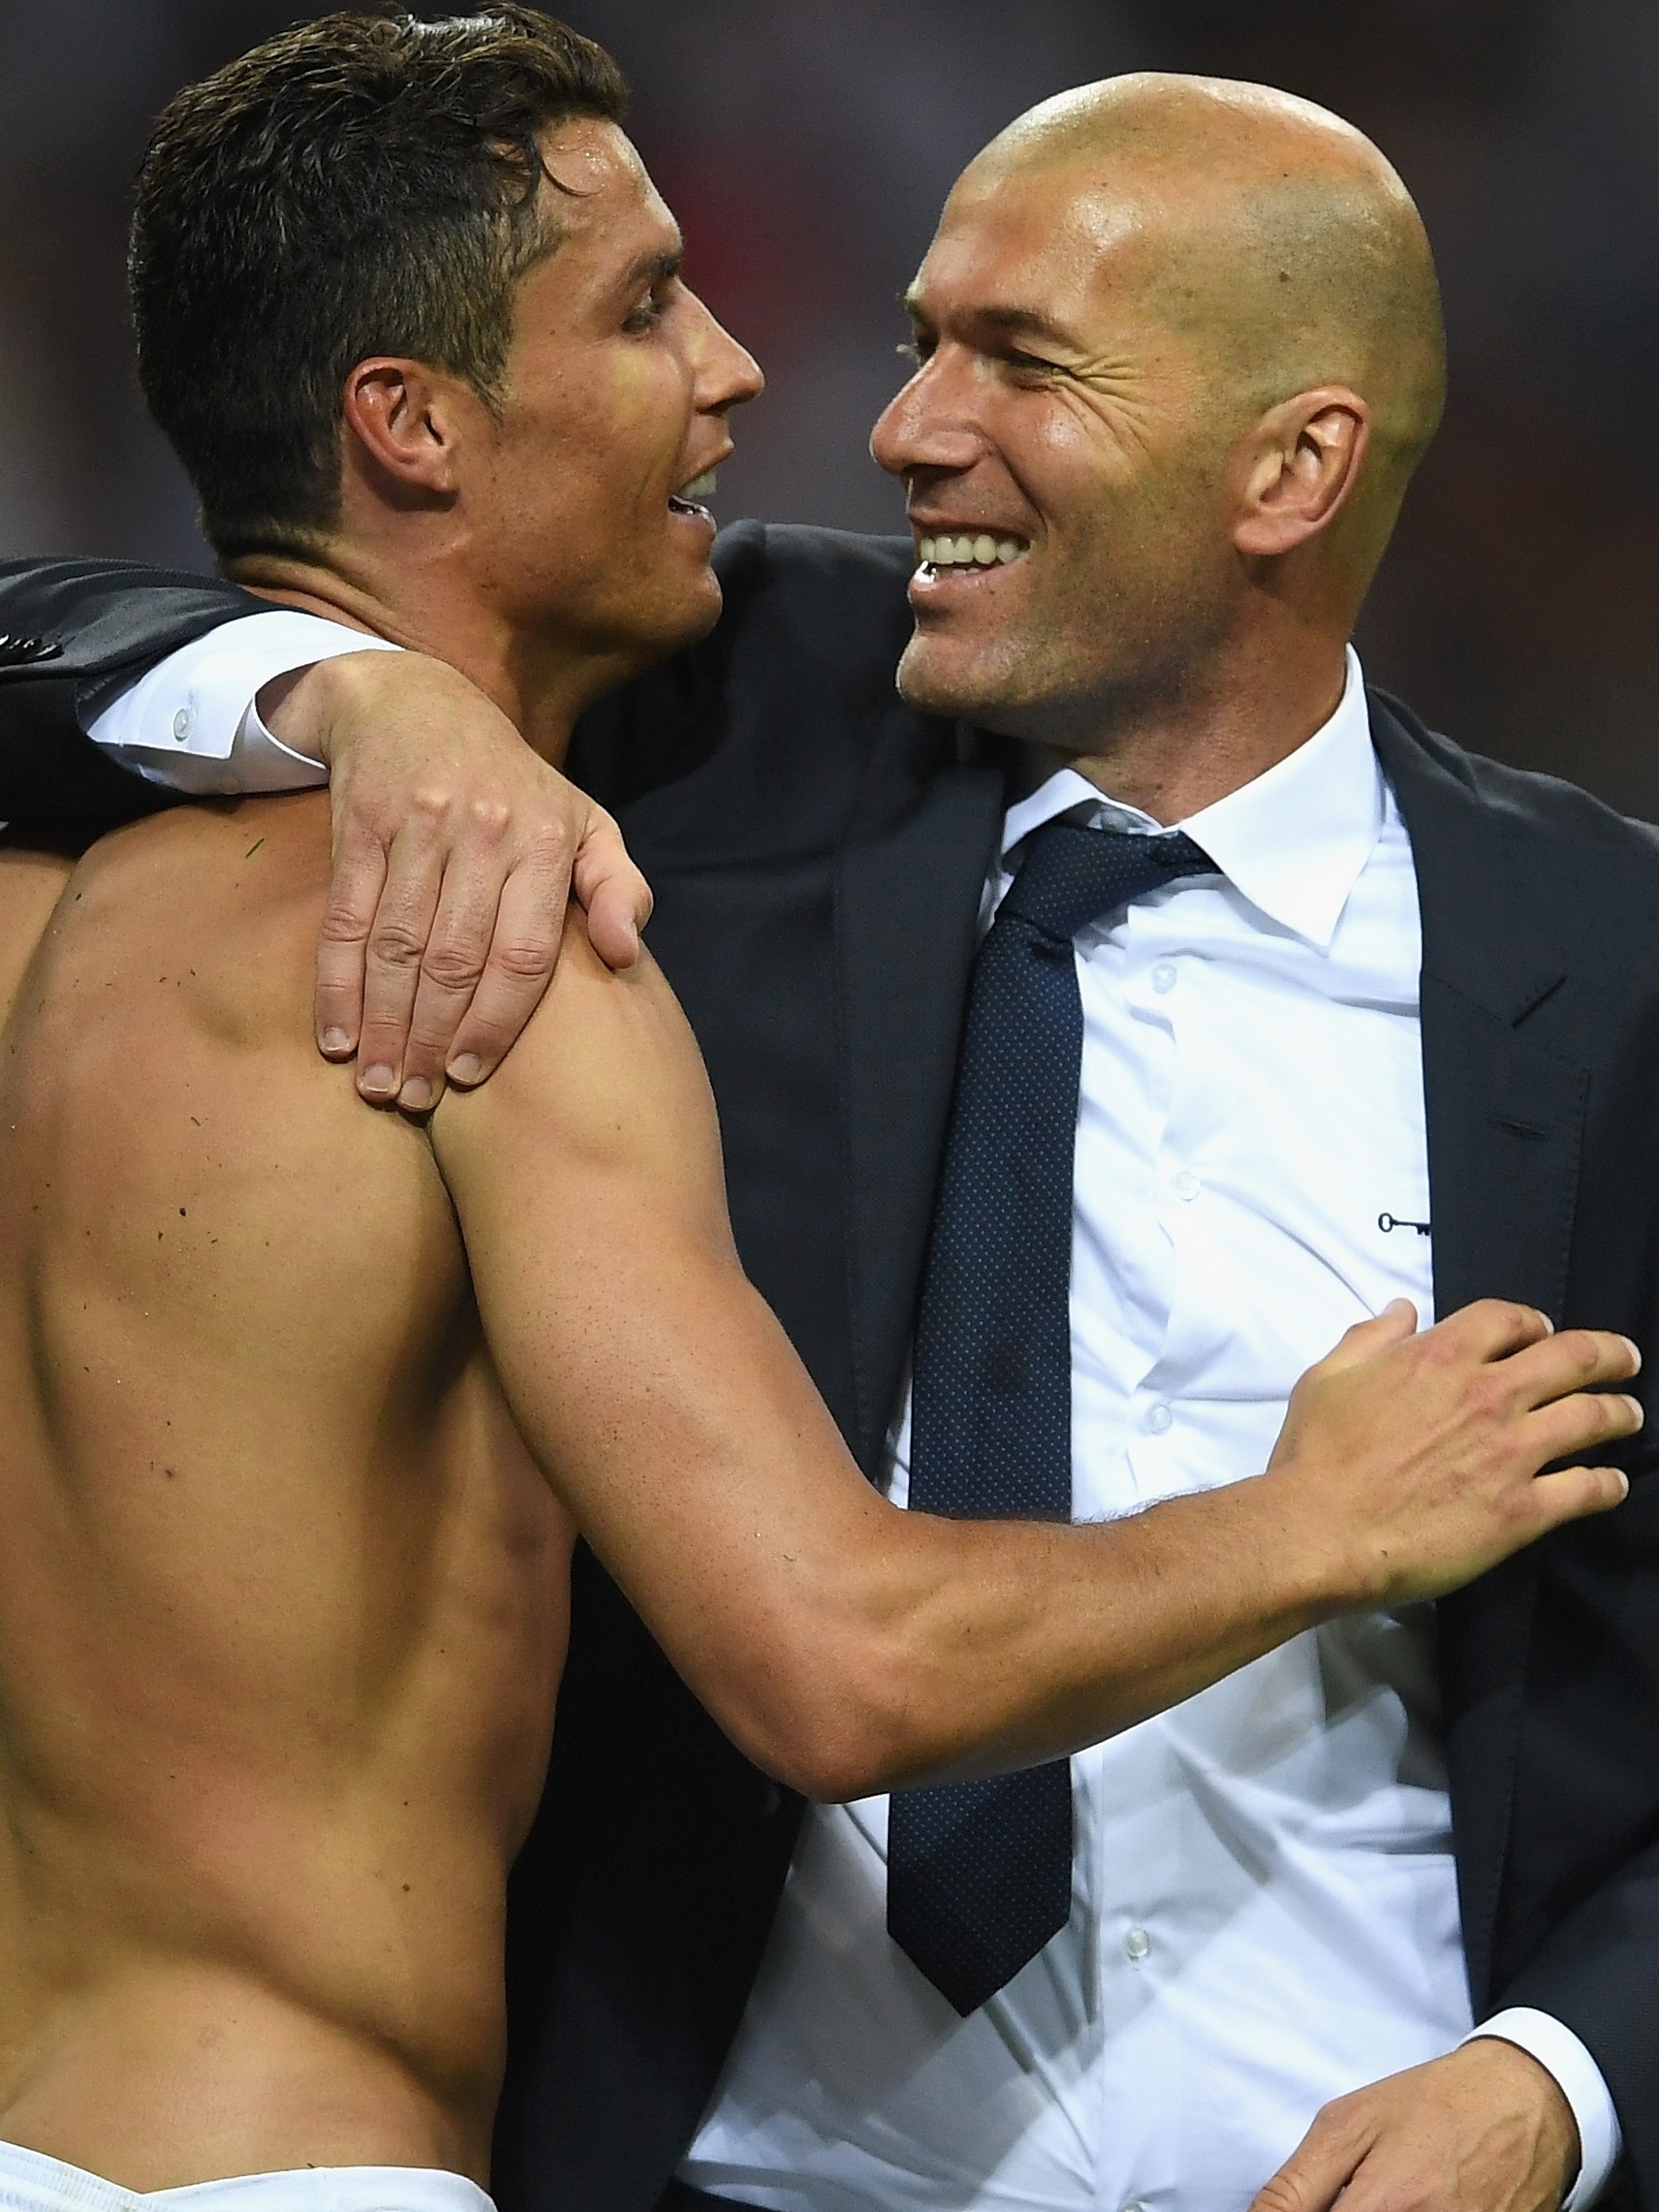 Ex-jogador Zidane brinca com a barriga de Ronaldo em Porto Alegre